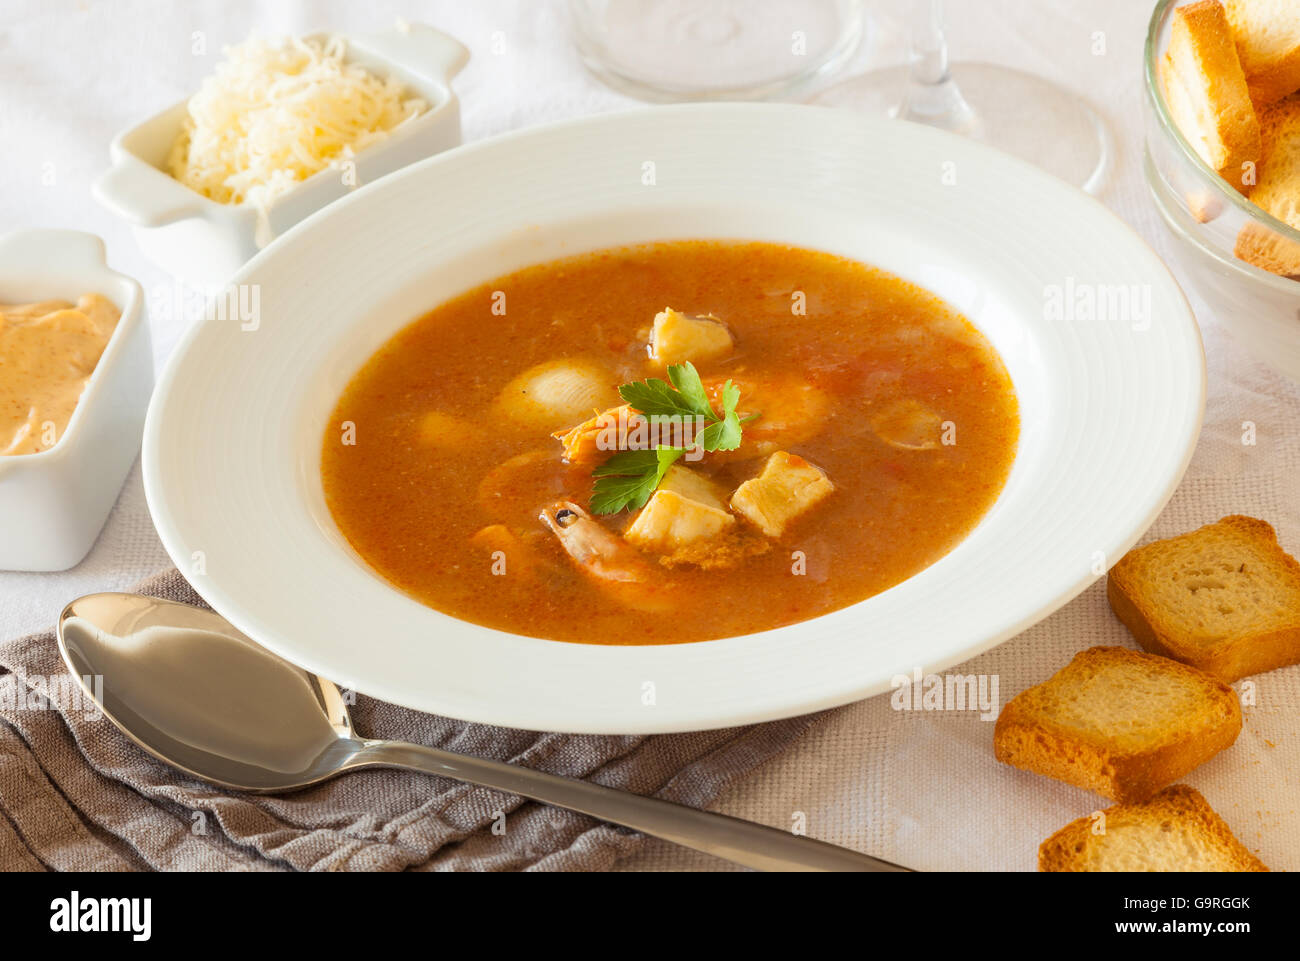 Une assiette de soupe de poissons et fruits de mer français, servi avec du pain grillé, sauce rouille et de fromage râpé Banque D'Images